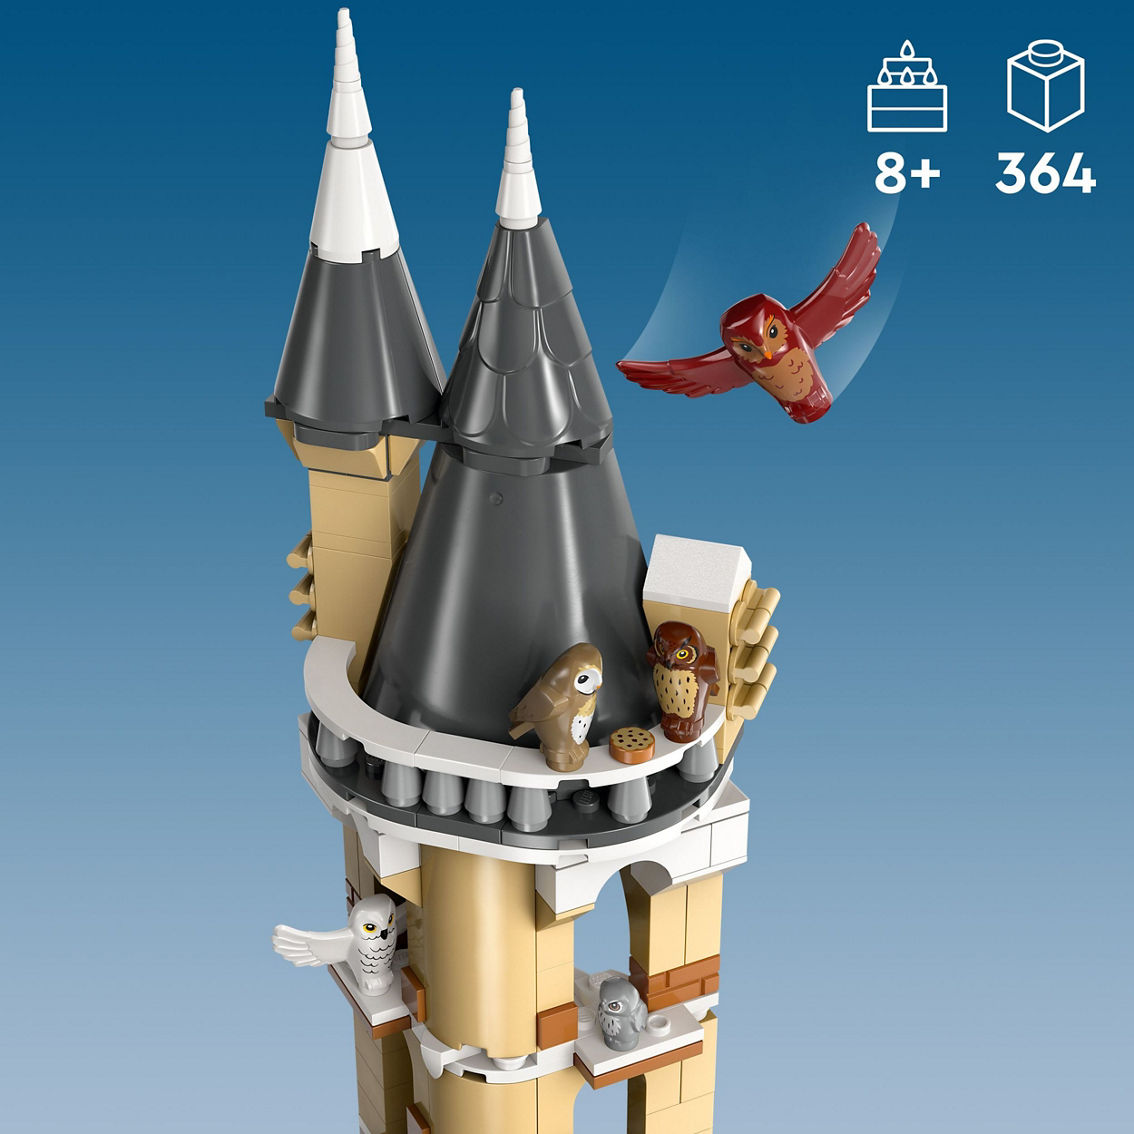 LEGO Harry Potter 76430 - Image 10 of 10